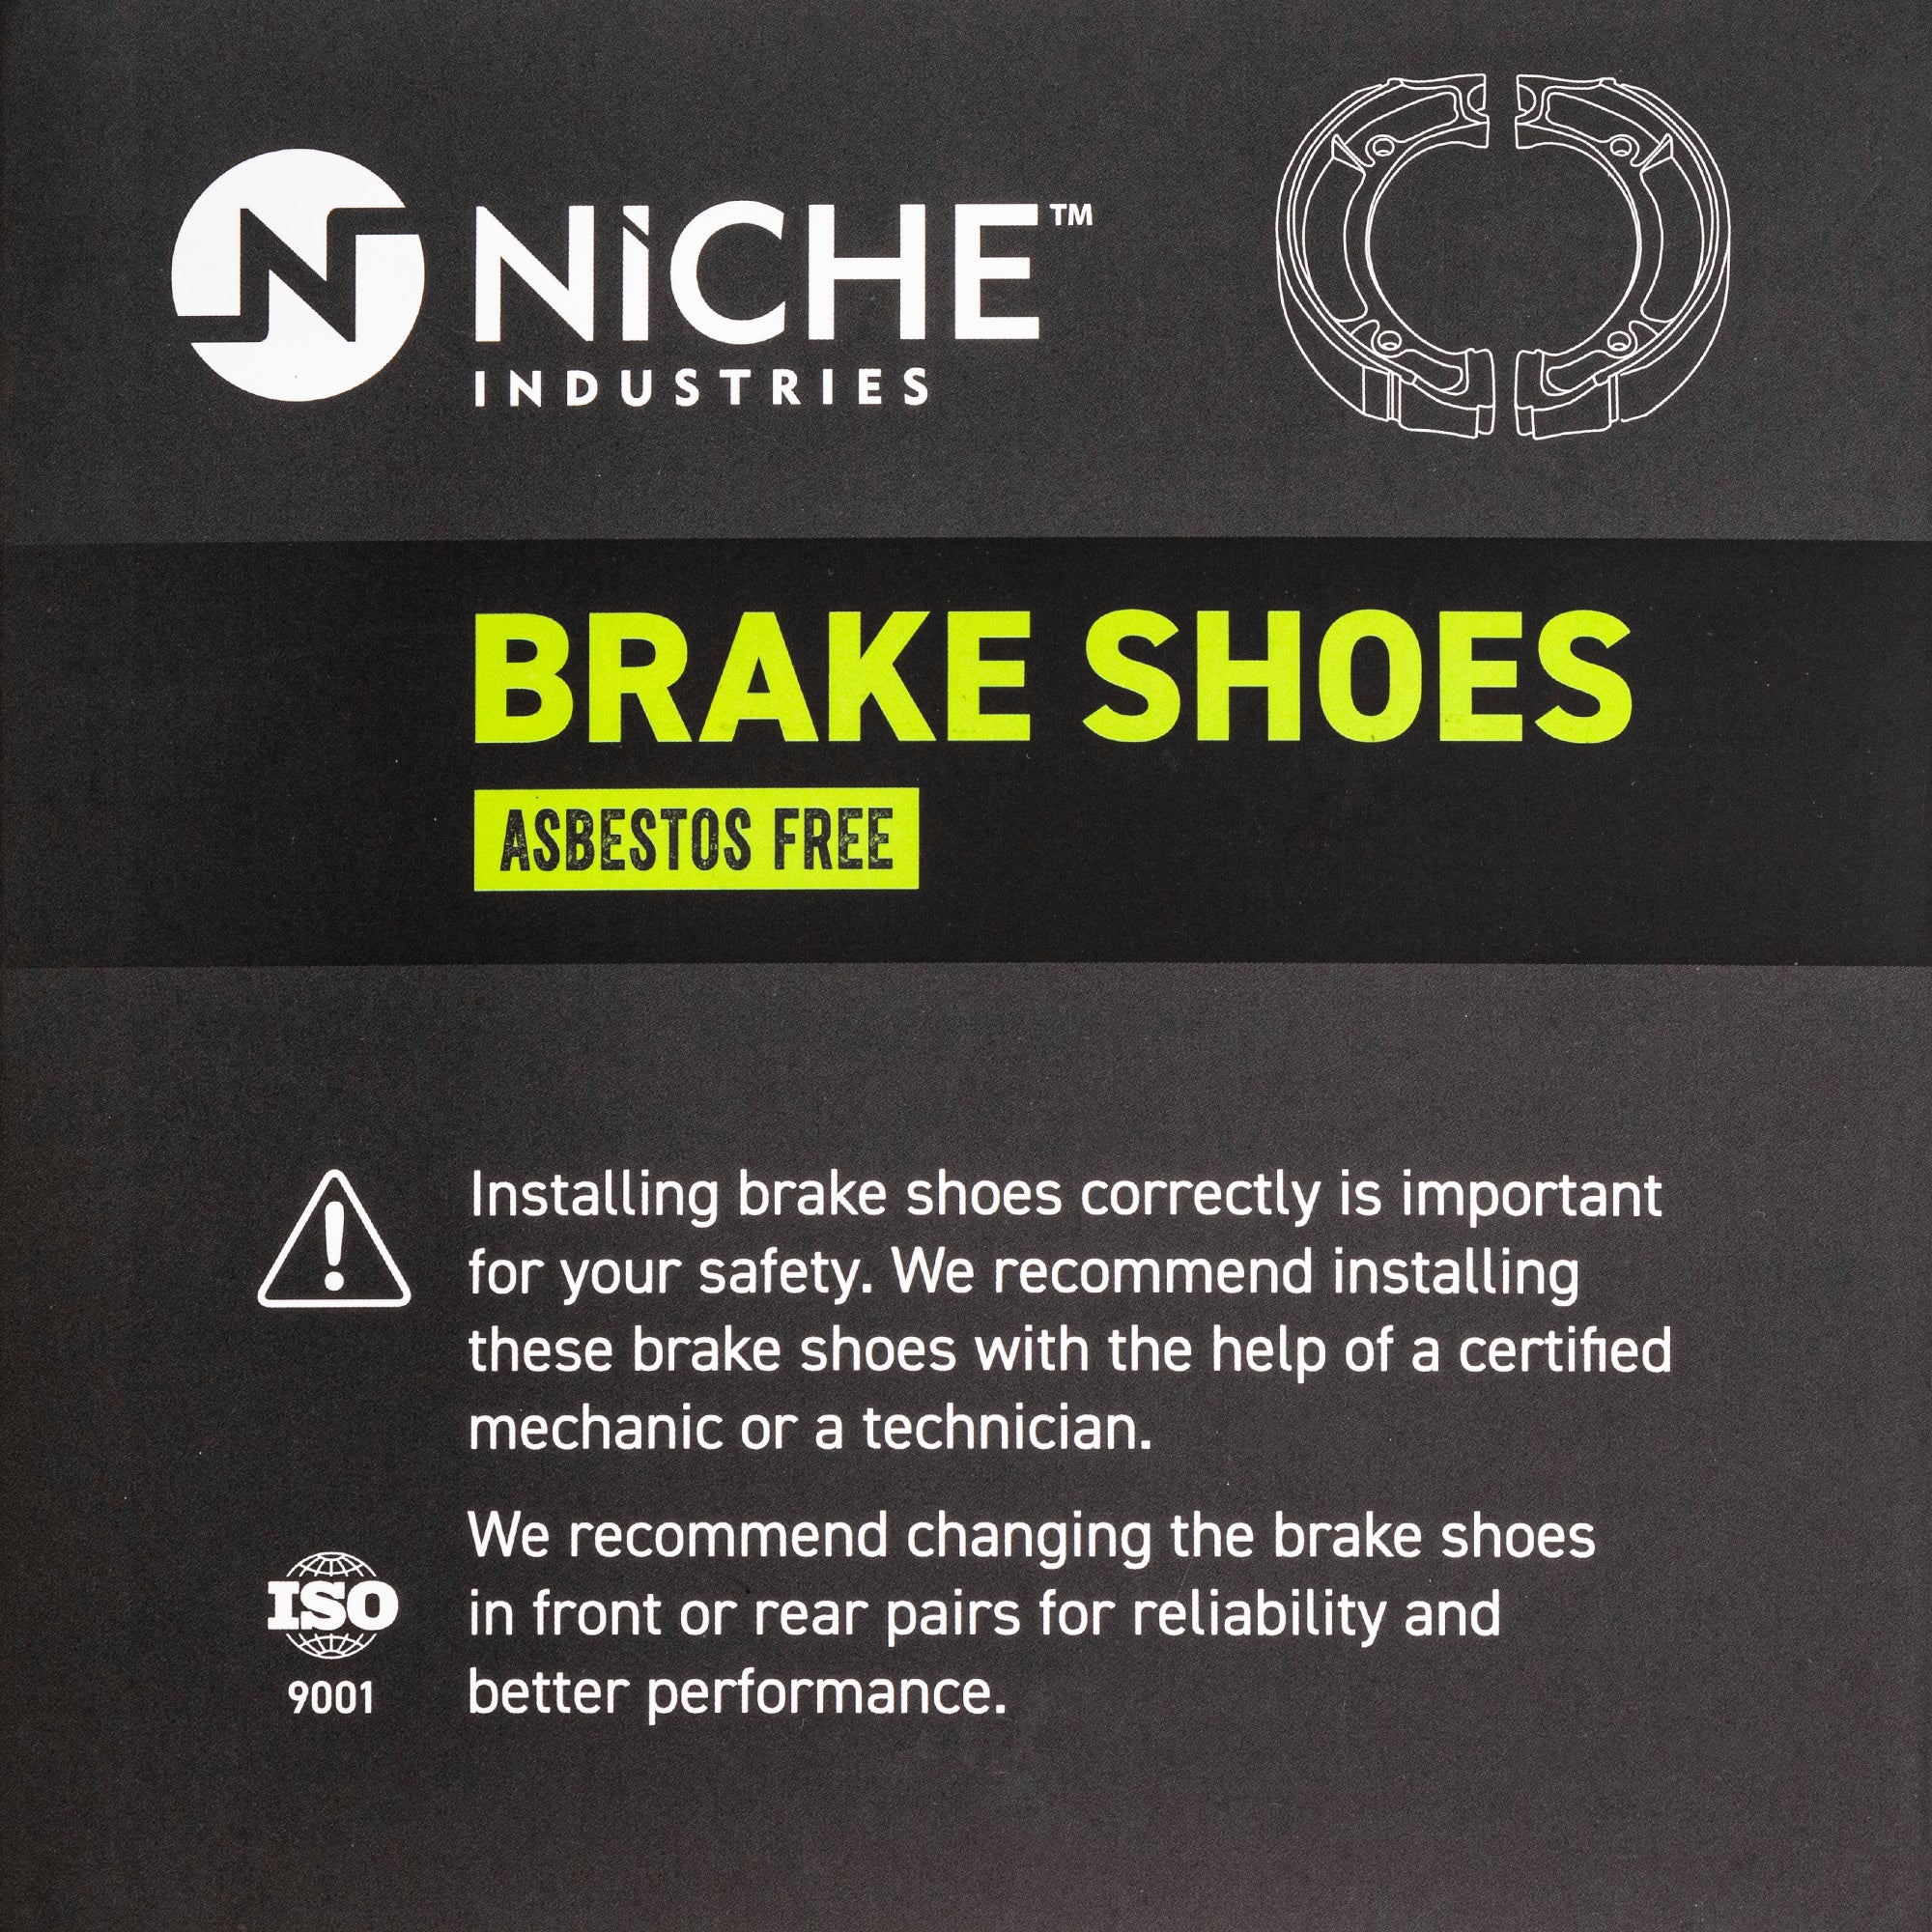 Full Semi-Metallic Brake Pad & Shoe Set For Honda MK1002537